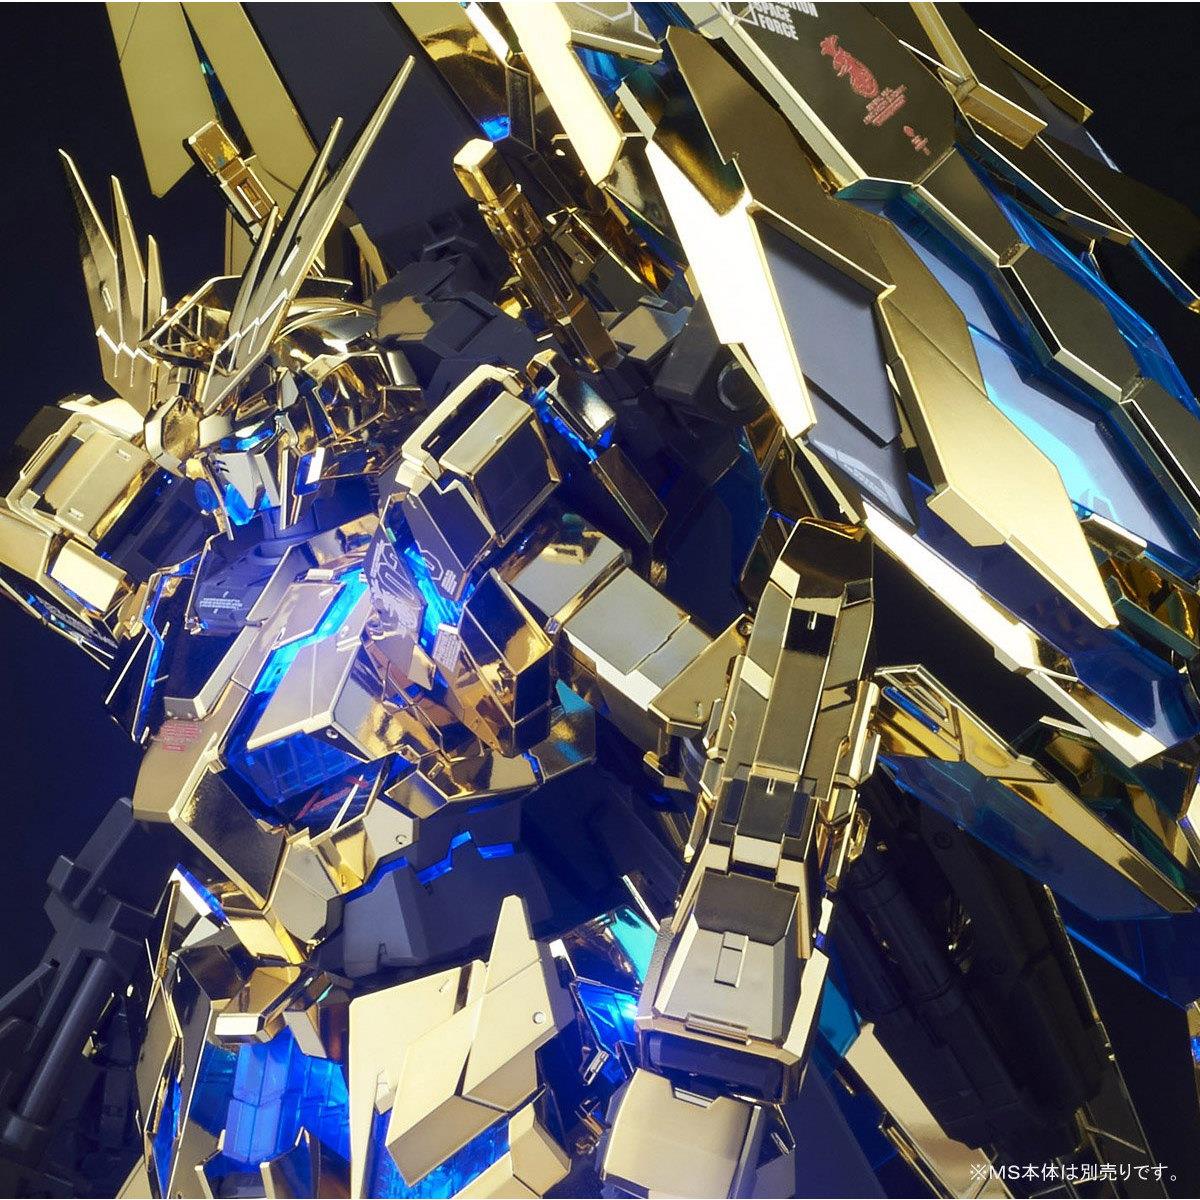 Gundam Unicorn: LED Unit for PG RX-0 Unicorn Gundam